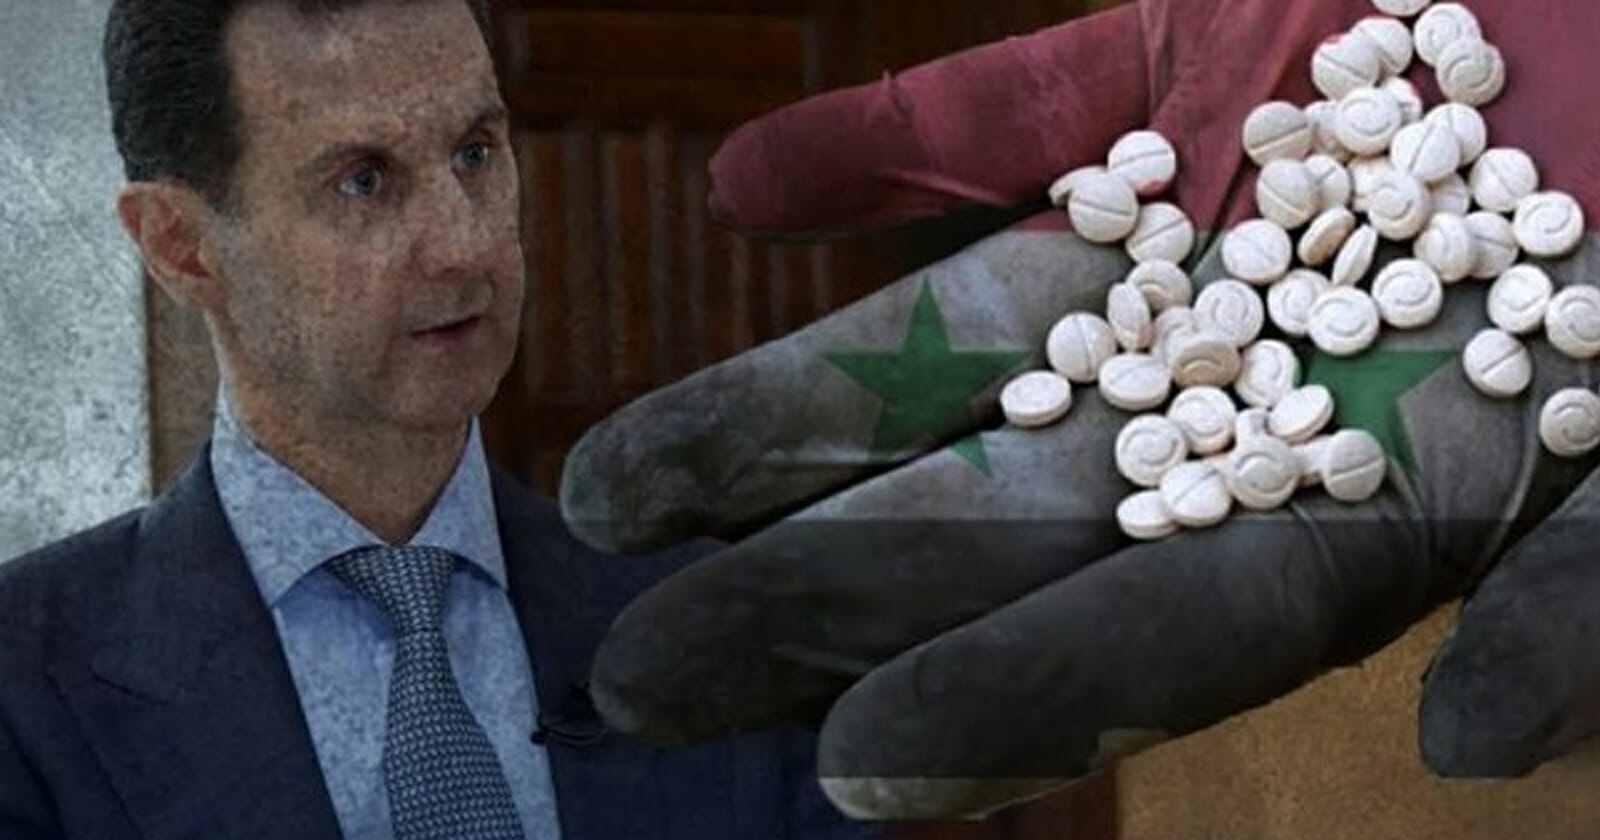 عقوبات غربية جديدة ضد أبناء عمومة بشار الأسد بسبب تجارة المخدرات